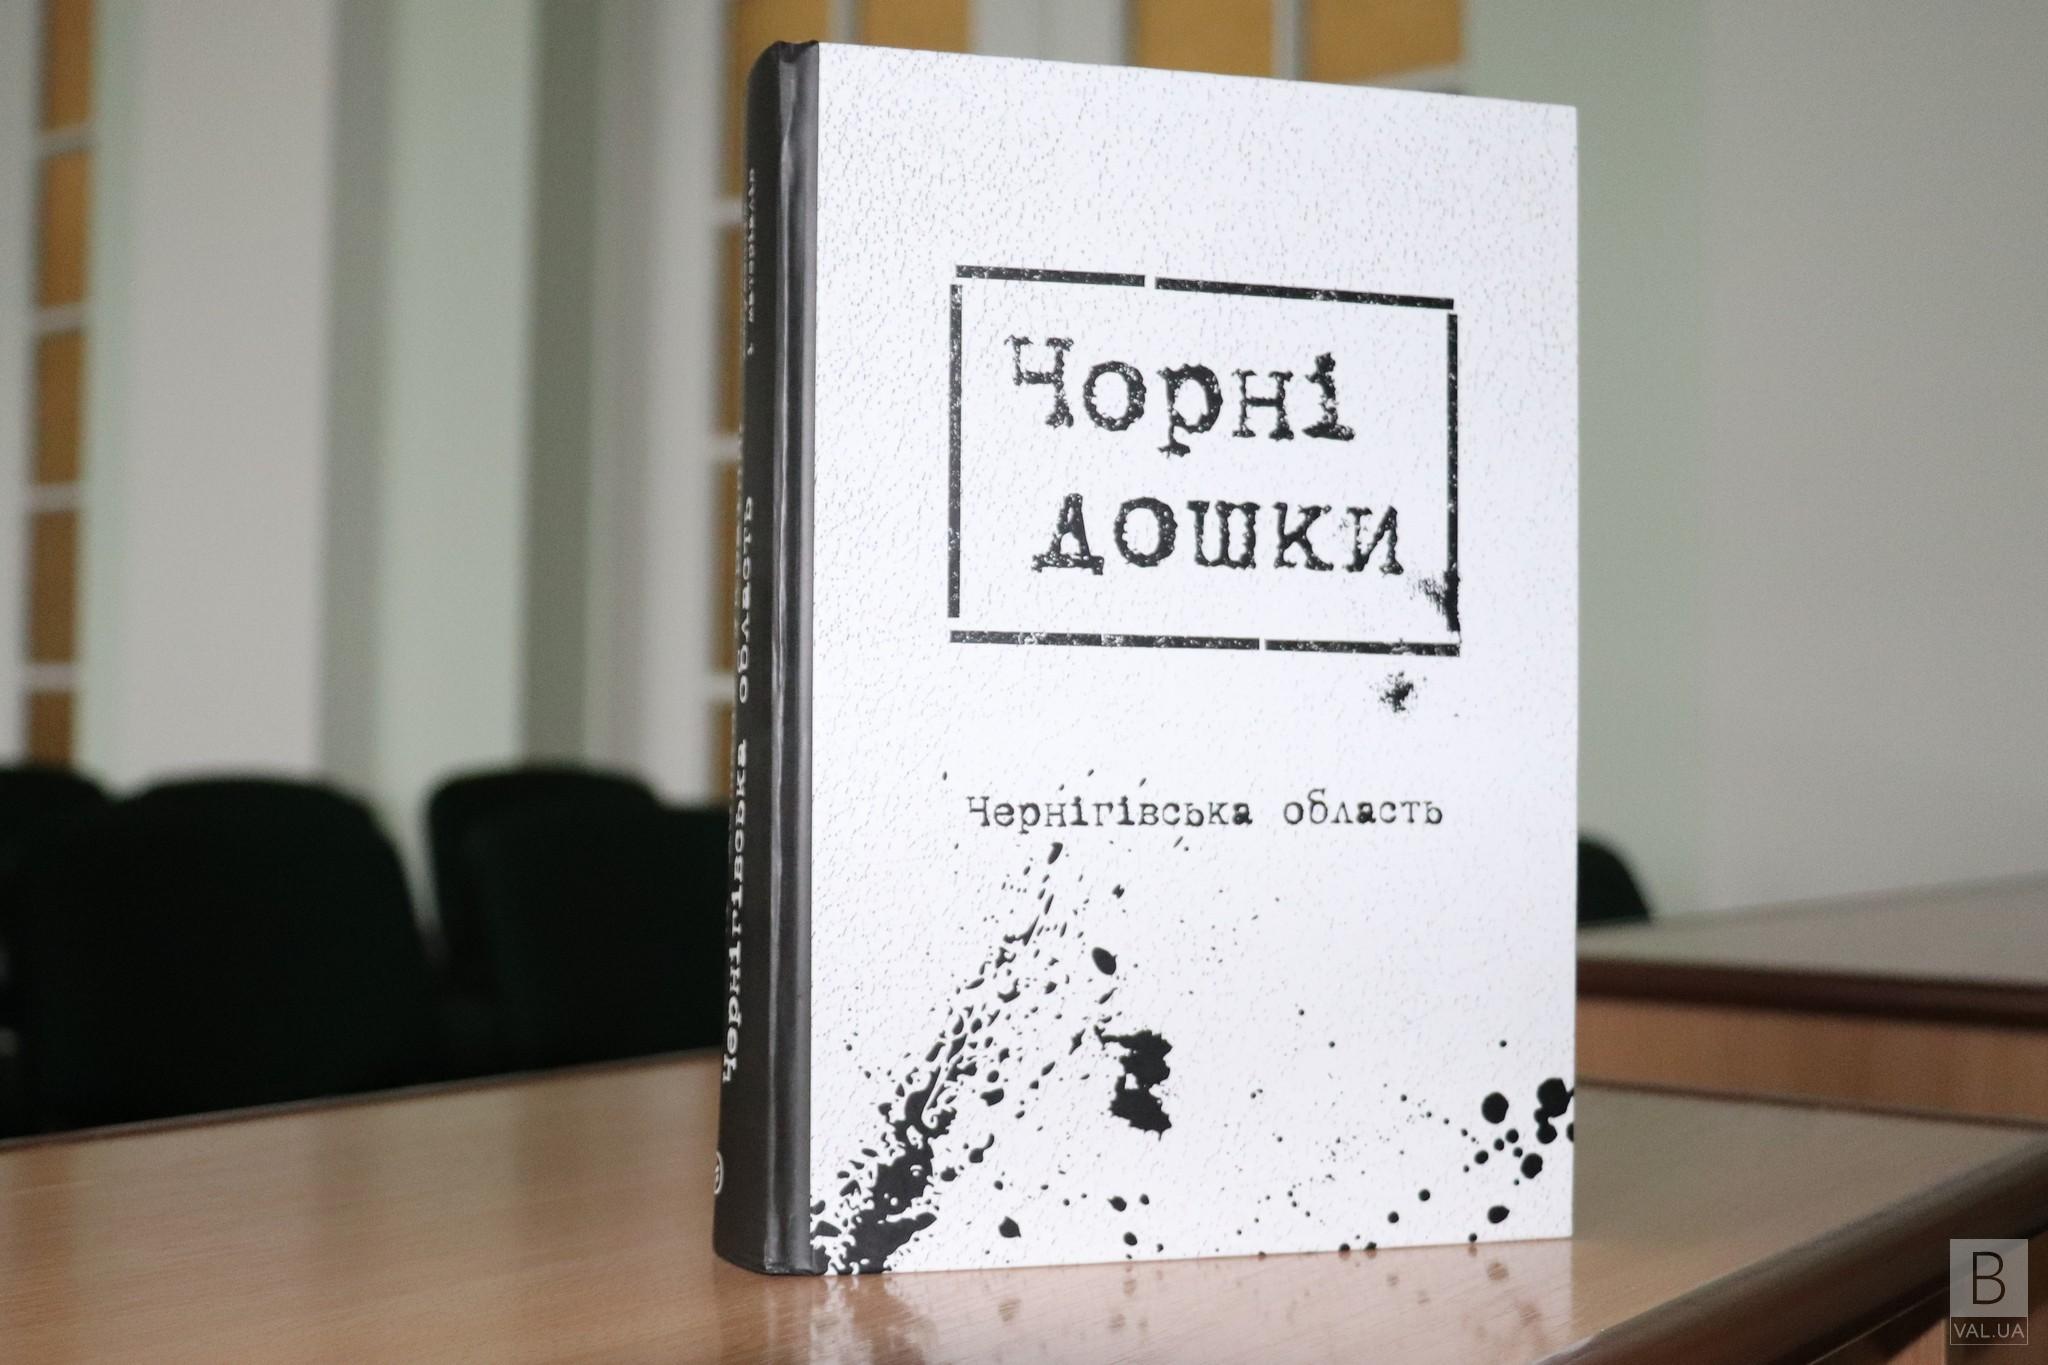 Вперше у Чернігові представили книгу «Чорні дошки» України. Чернігівська область»